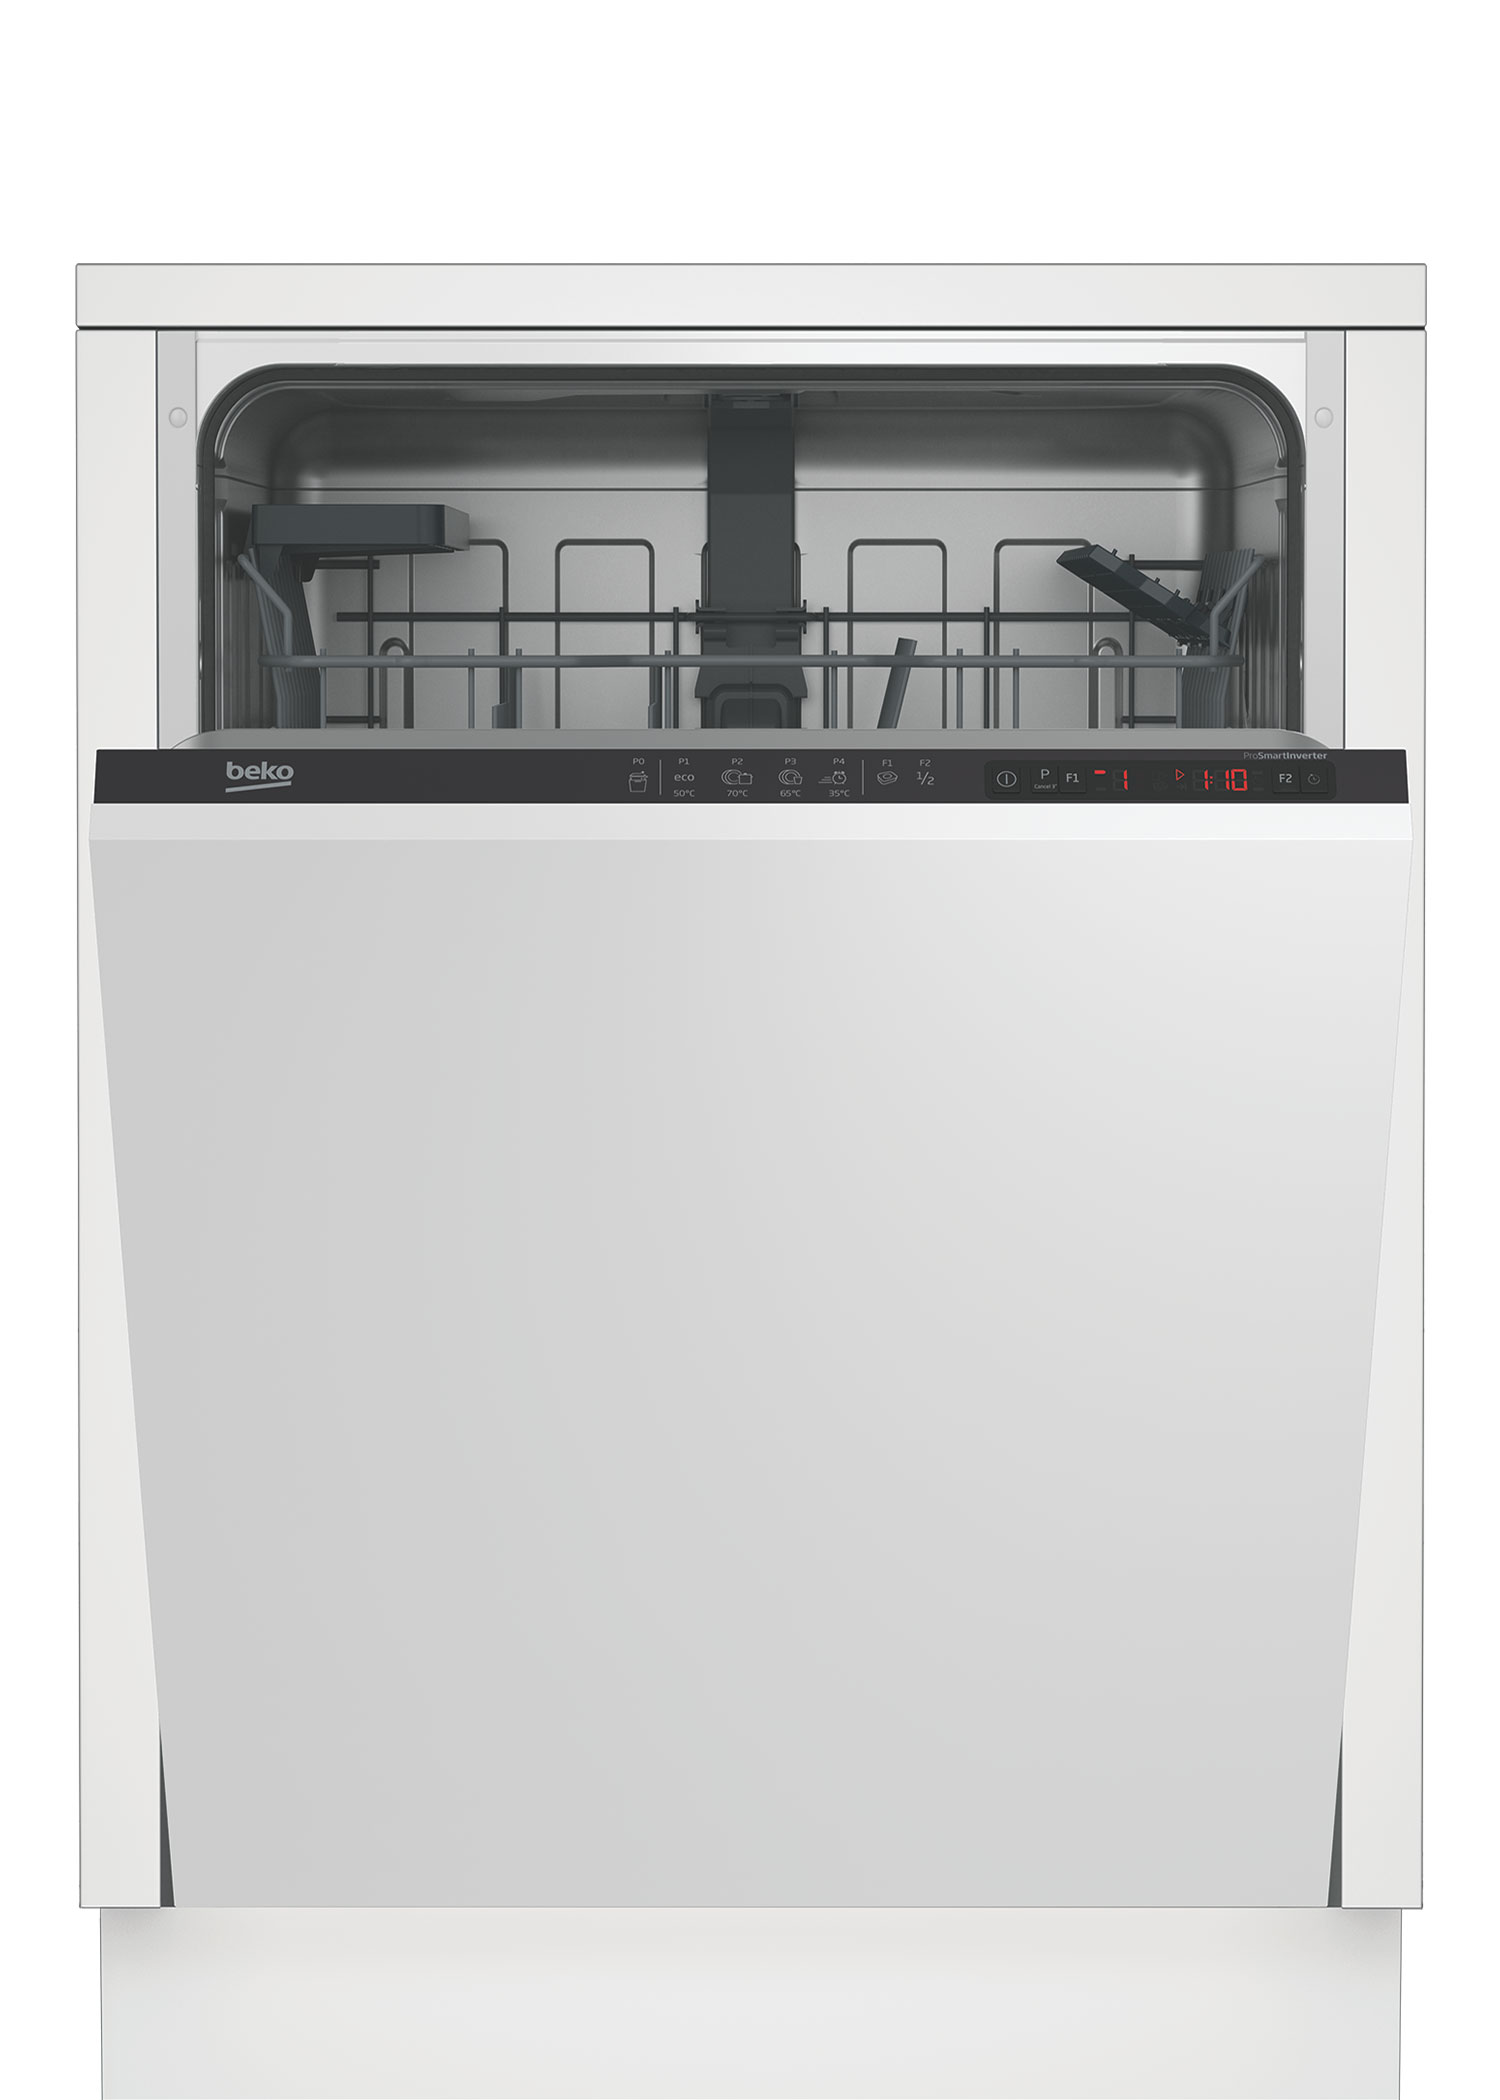 Встраиваемая посудомоечная машина Beko DIN24310 встраиваемая посудомоечная машина beko bdin15320